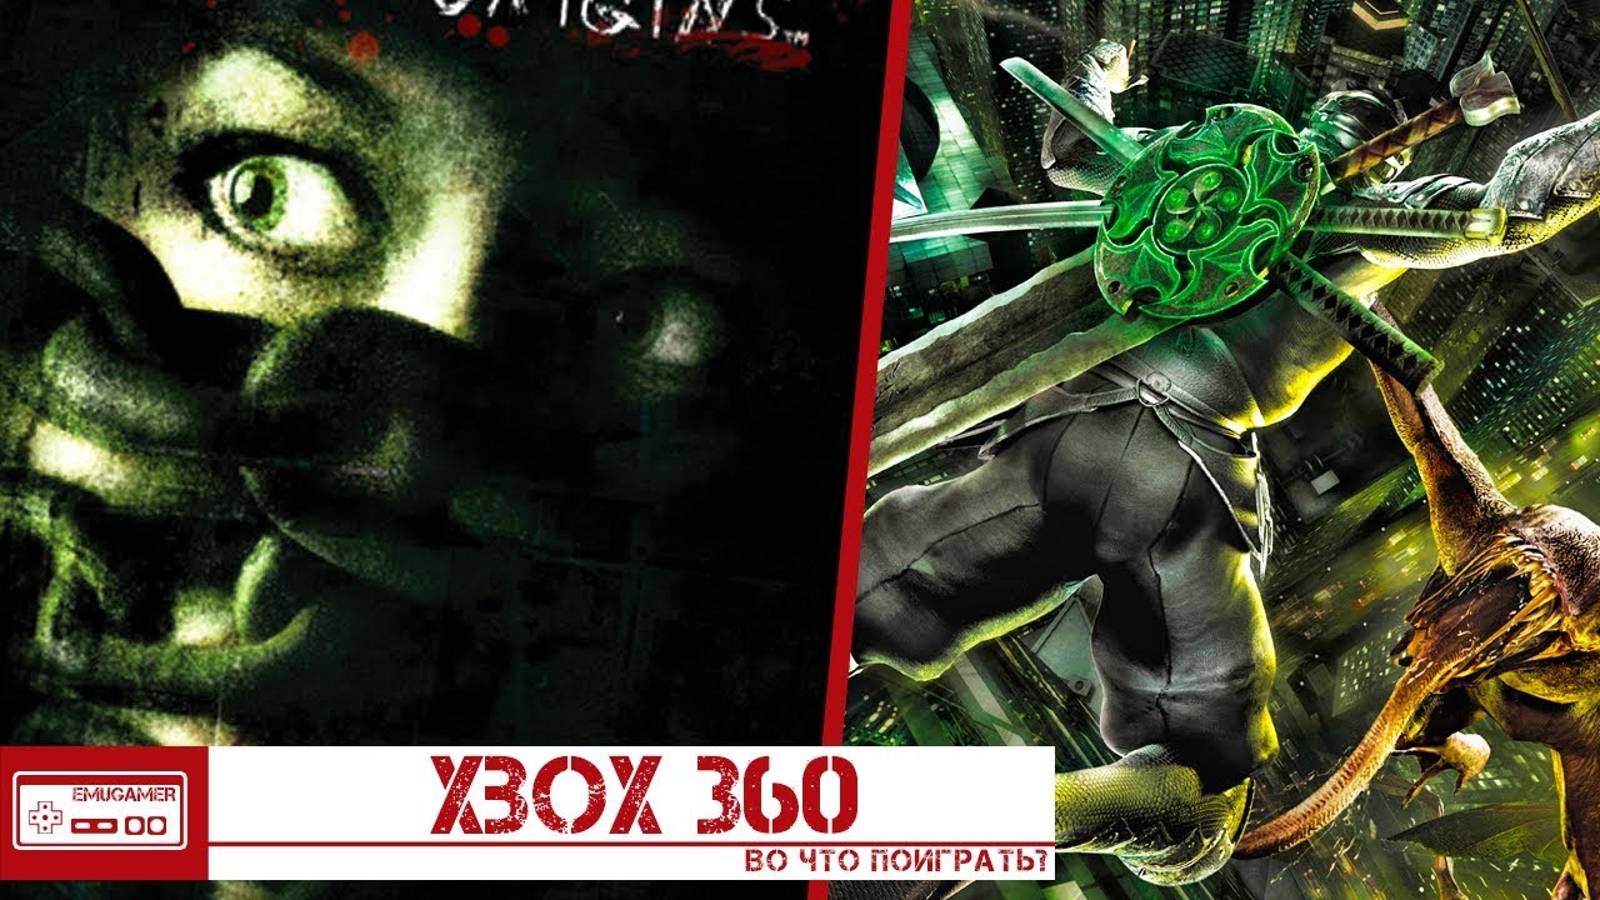 Во что поиграть на XBOX 360 - Вселенные Человека Паука, Ниндзя против Чужих